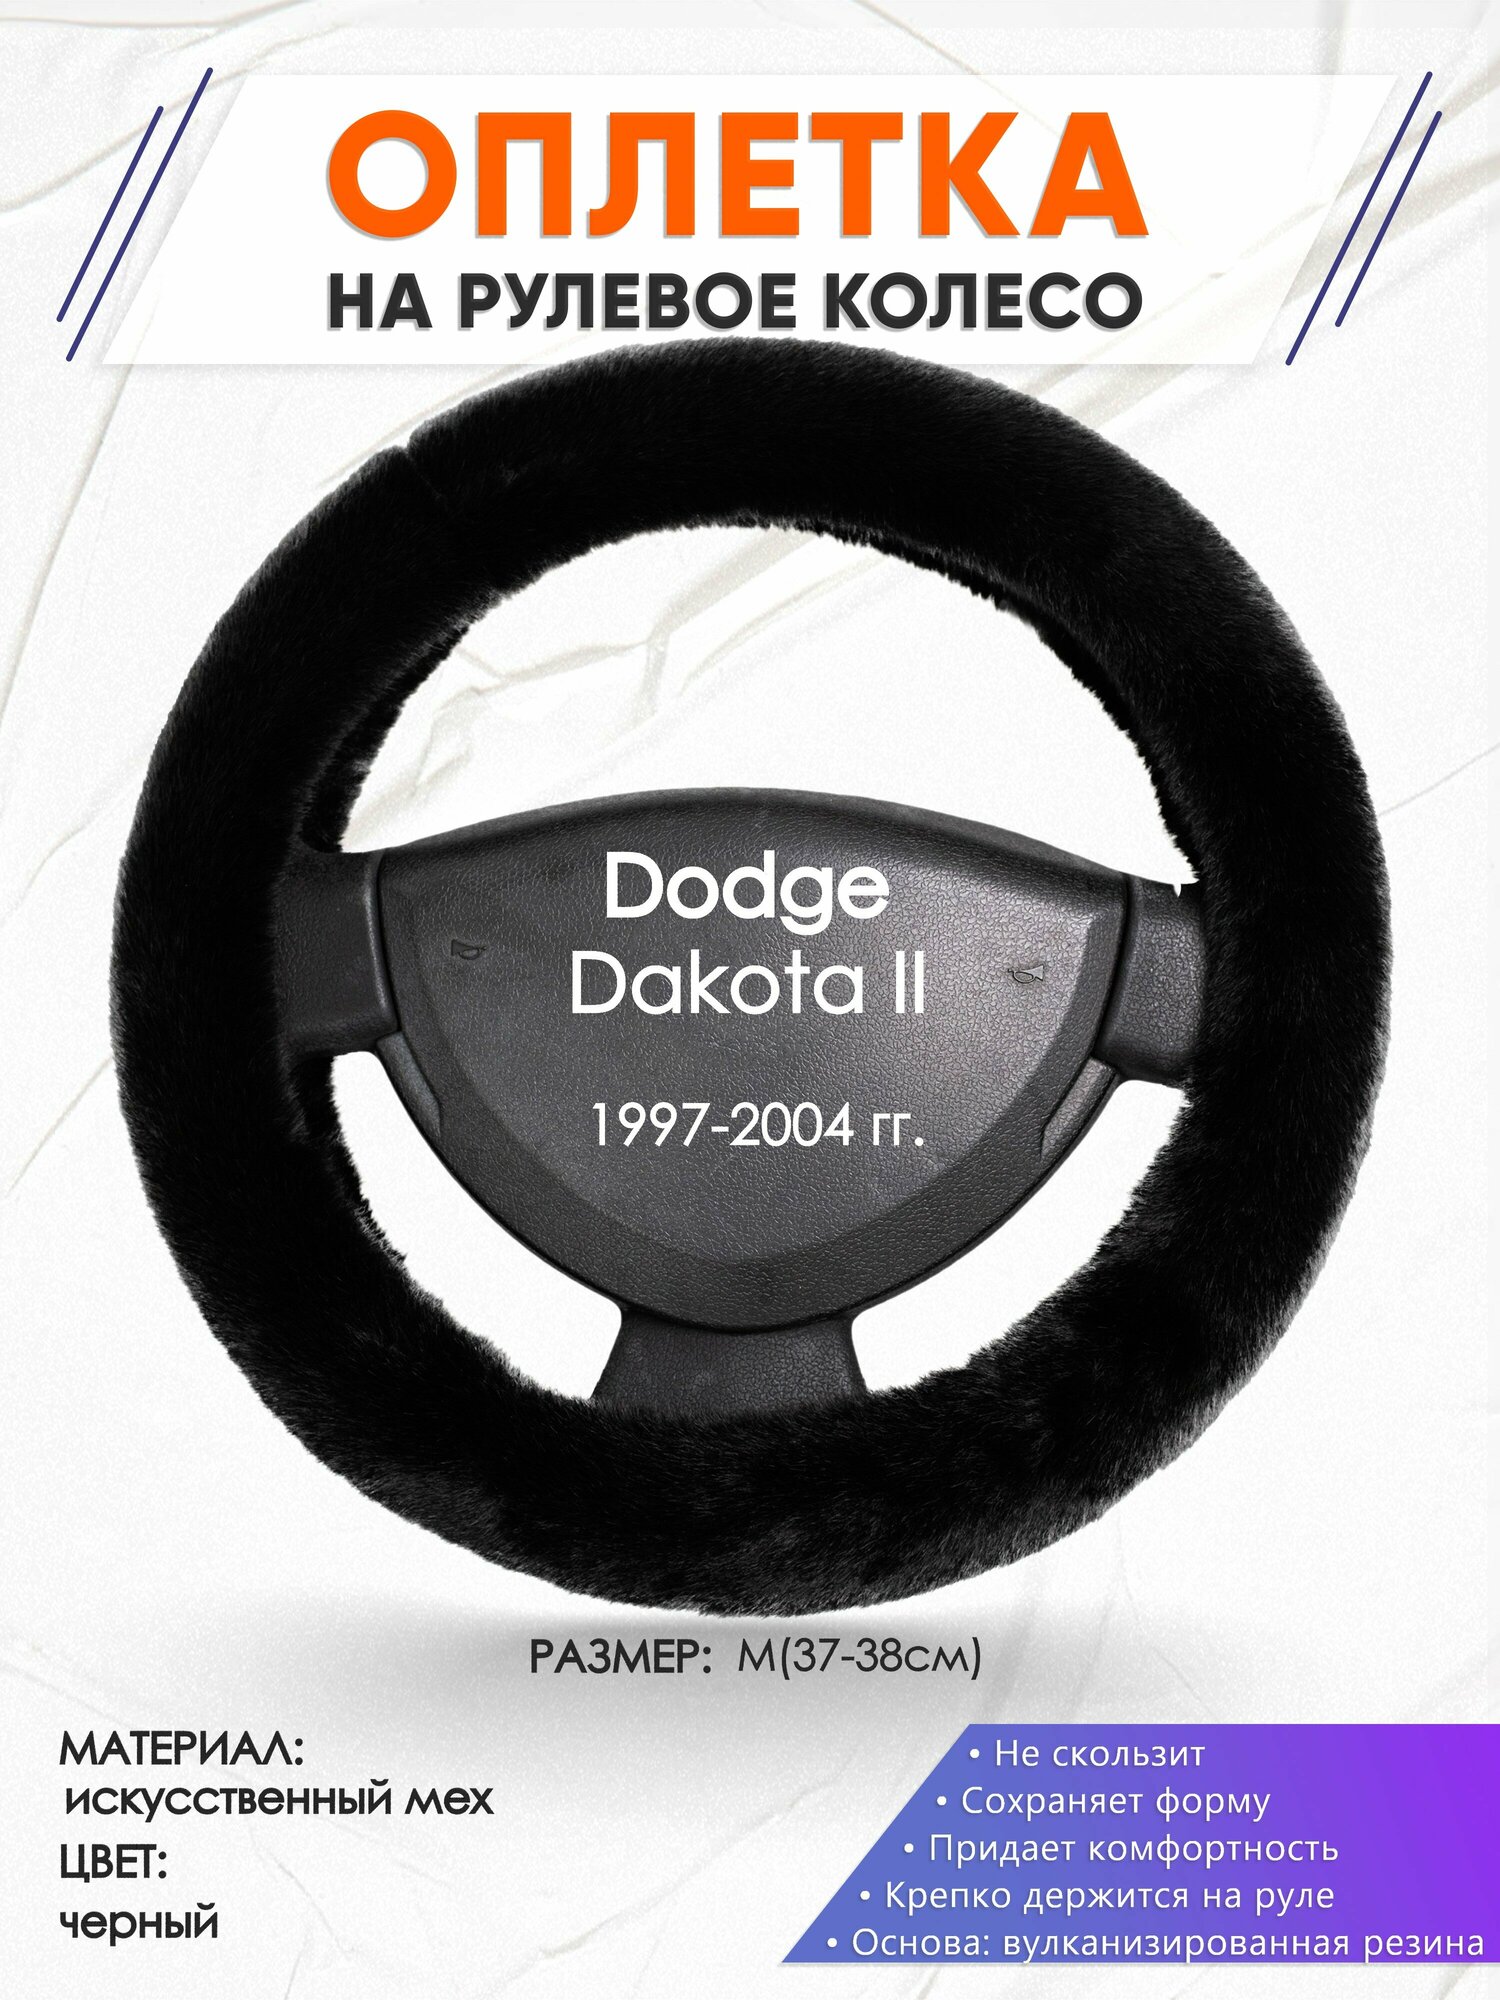 Оплетка наруль для Dodge Dakota 2(Додж Дакота 2) 1997-2004 годов выпуска размер M(37-38см) Искусственный мех 45